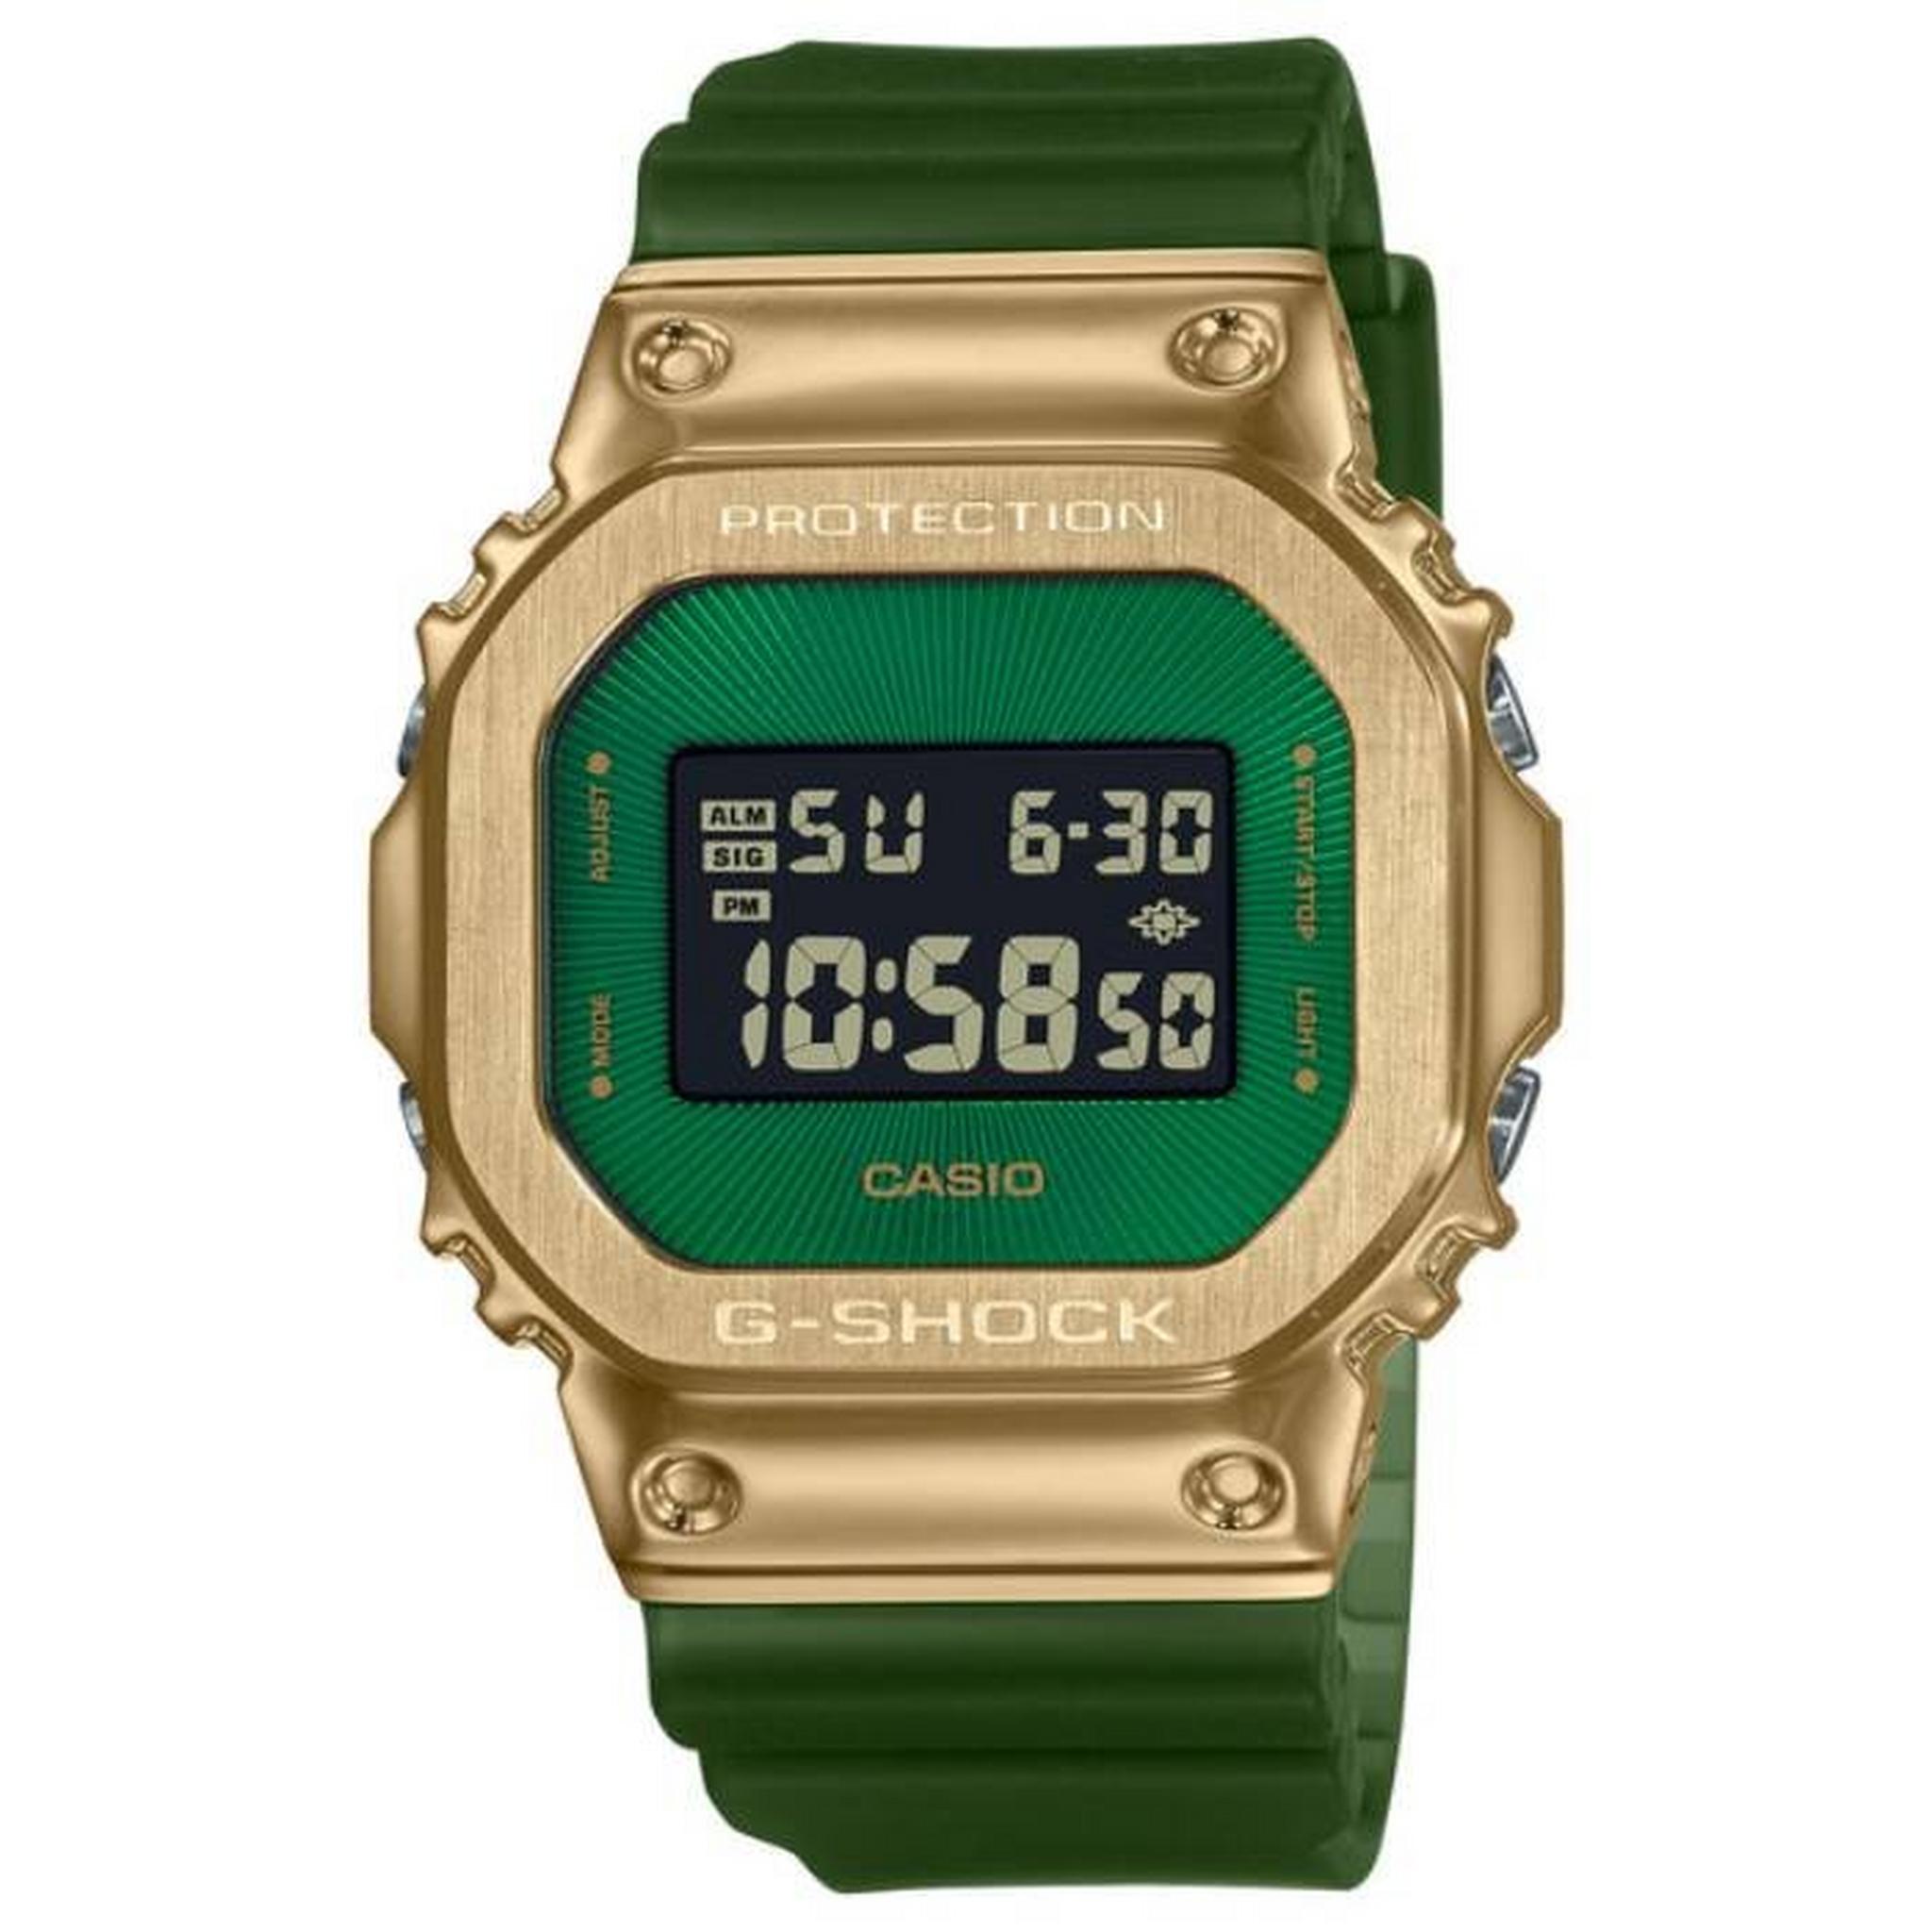 ساعة جي-شوك يوث لكلا الجنسين من كاسيو ، رقمية،  49مم،  GM-5600CL-3DR– أخضر